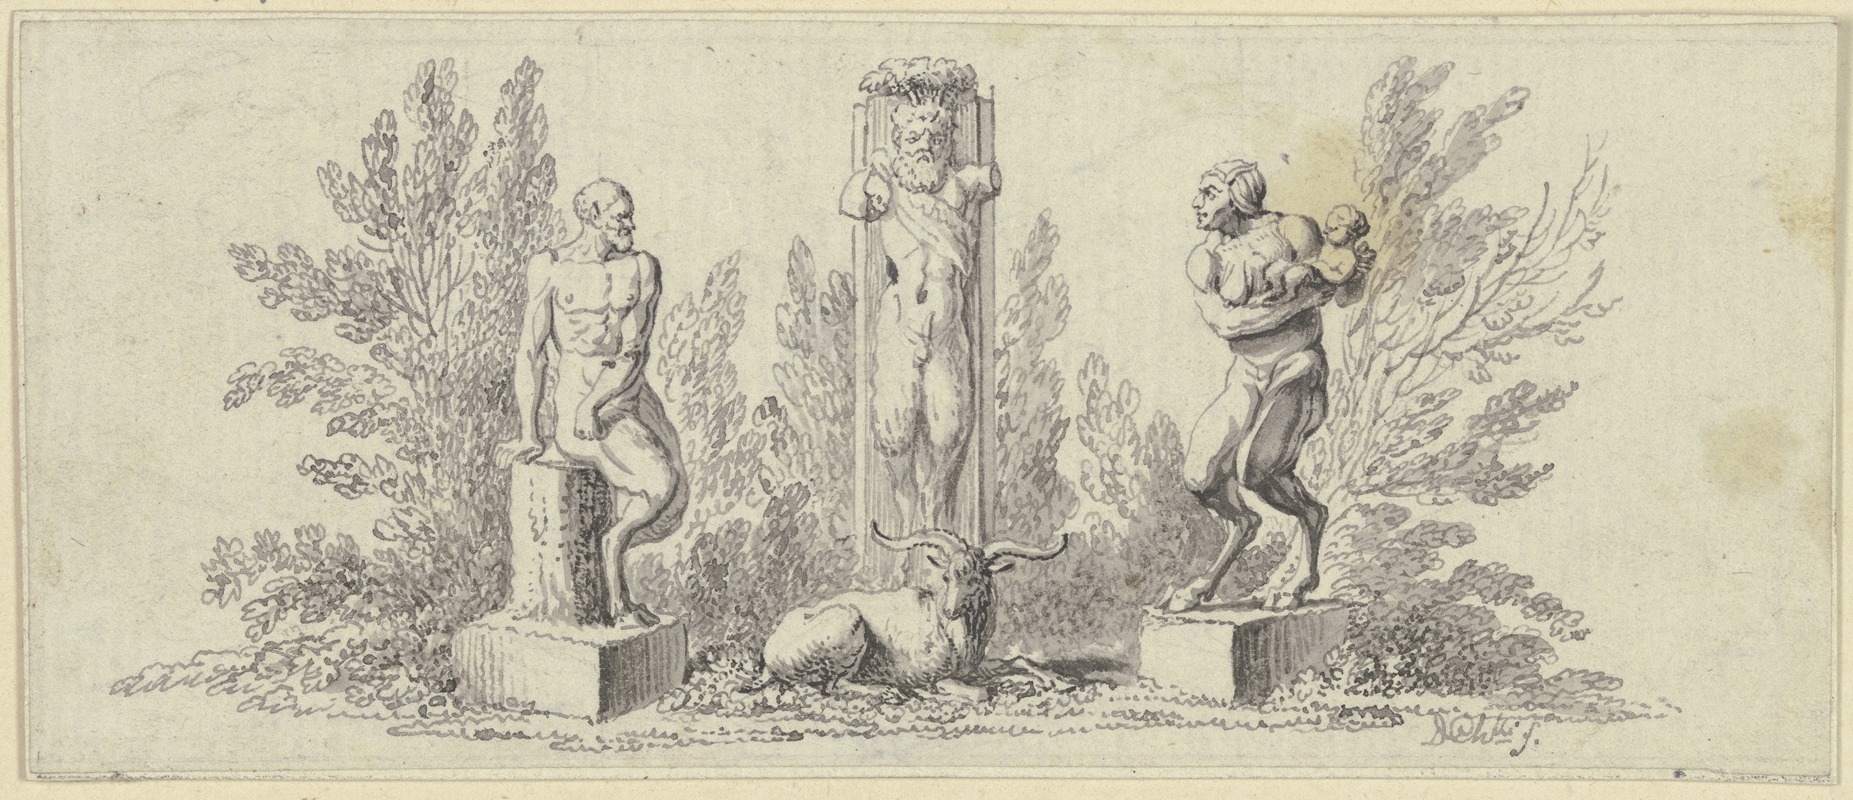 Daniel Nikolaus Chodowiecki - Pan und Paniskin mit Kind, Bildwerken gleich um eine ithyphallische Panherme gruppiert, vor der ein Ziegenbock ruht